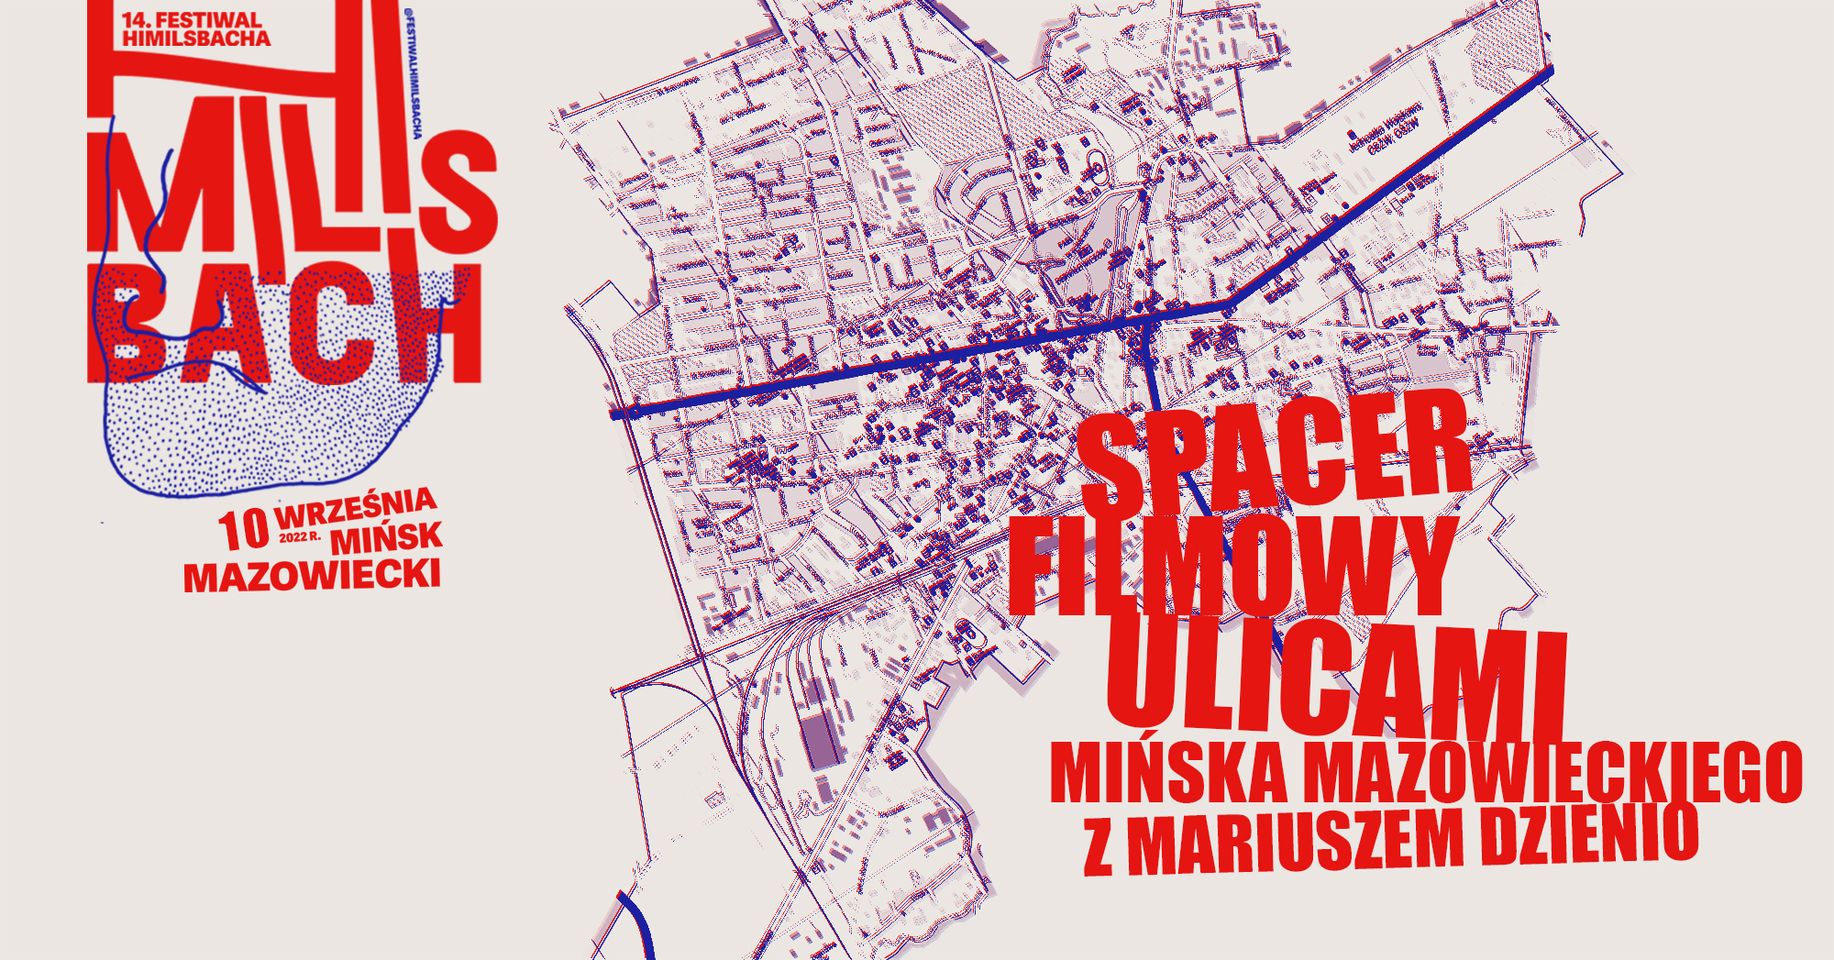 SPACER FILMOWY ulicami Mińska Mazowieckiego z Mariuszem Dzienio | 14.Festiwal Himilsbacha